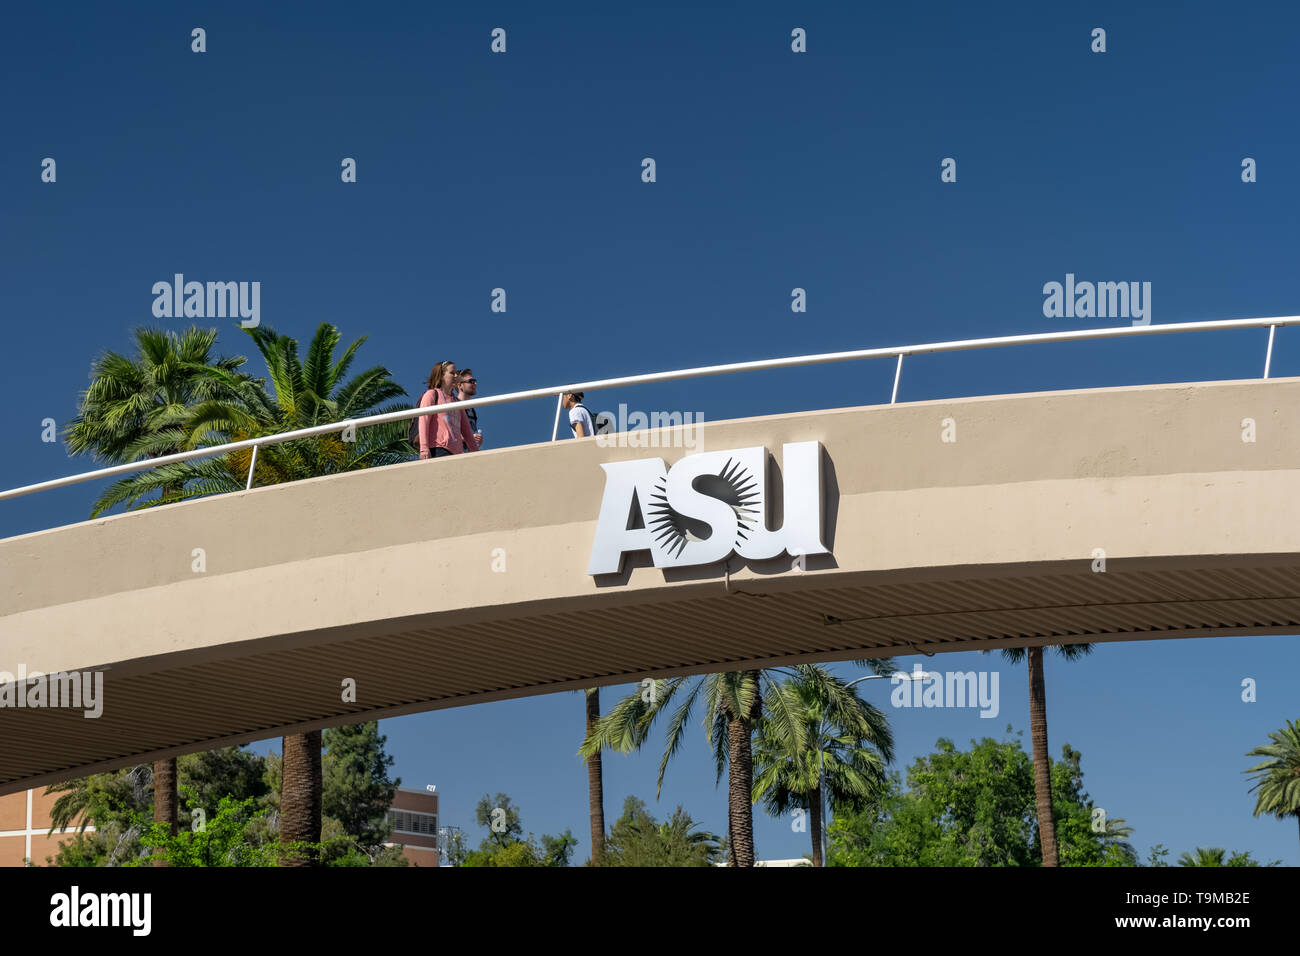 TEMPE, AZ/USA - 10. APRIL 2019: Nicht identifizierte Personen vorbei an Overhead Bridge auf dem Campus der Arizona State University. Stockfoto